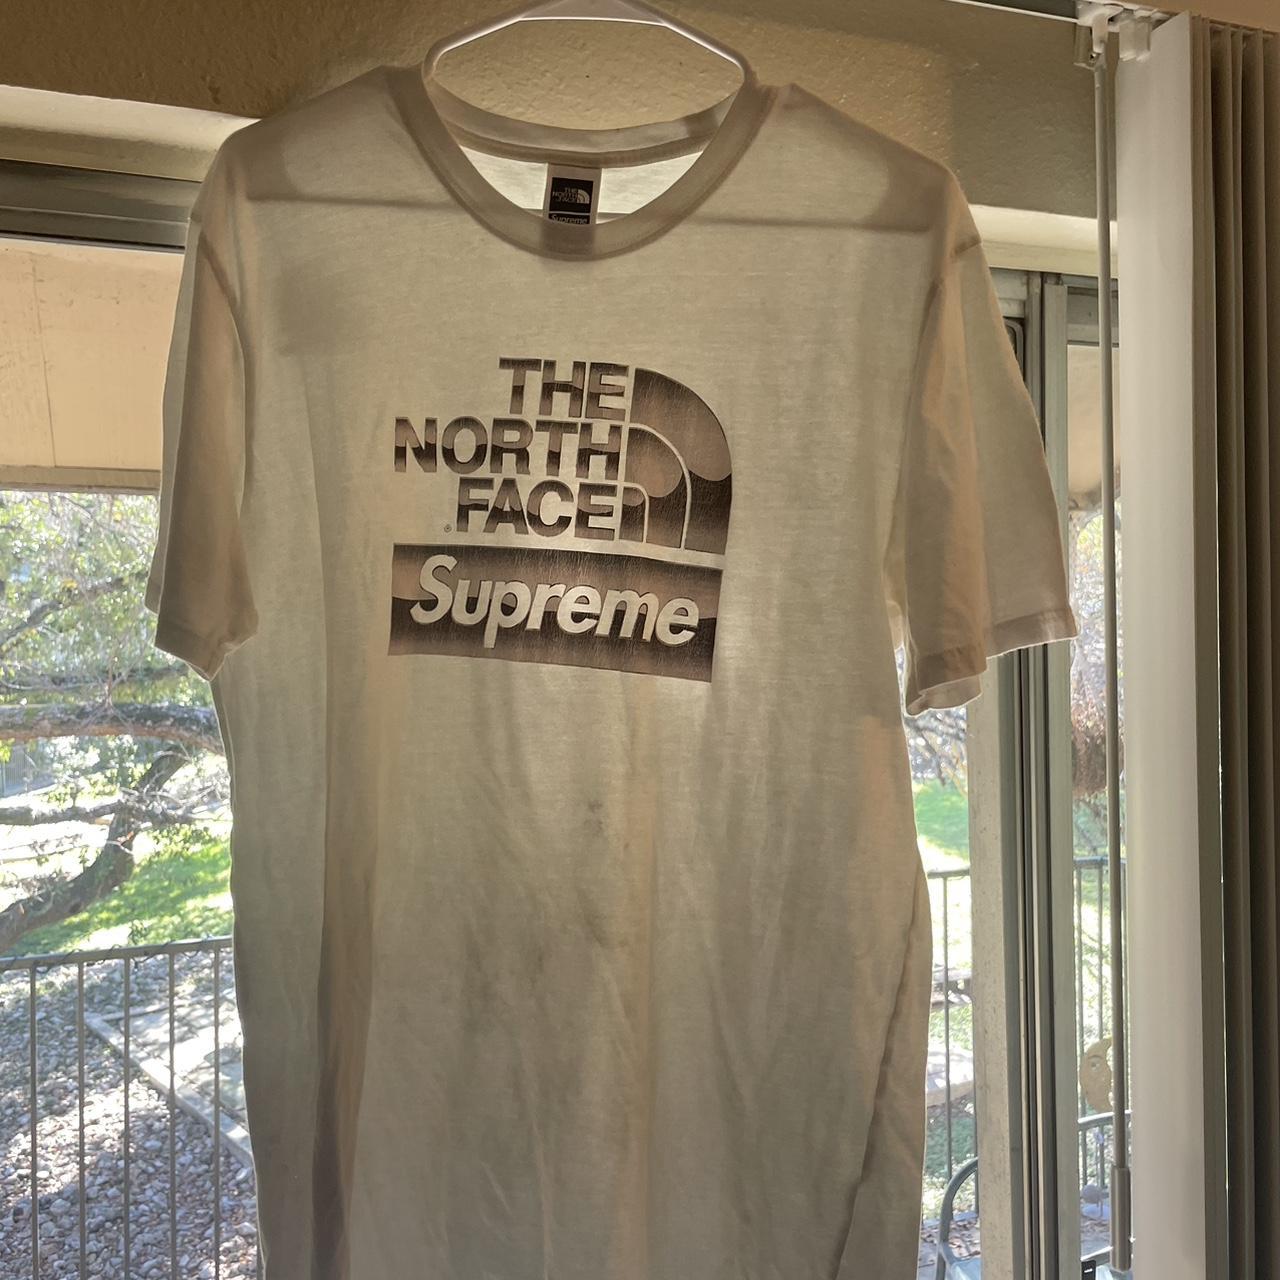 North face supreme shirt - Depop